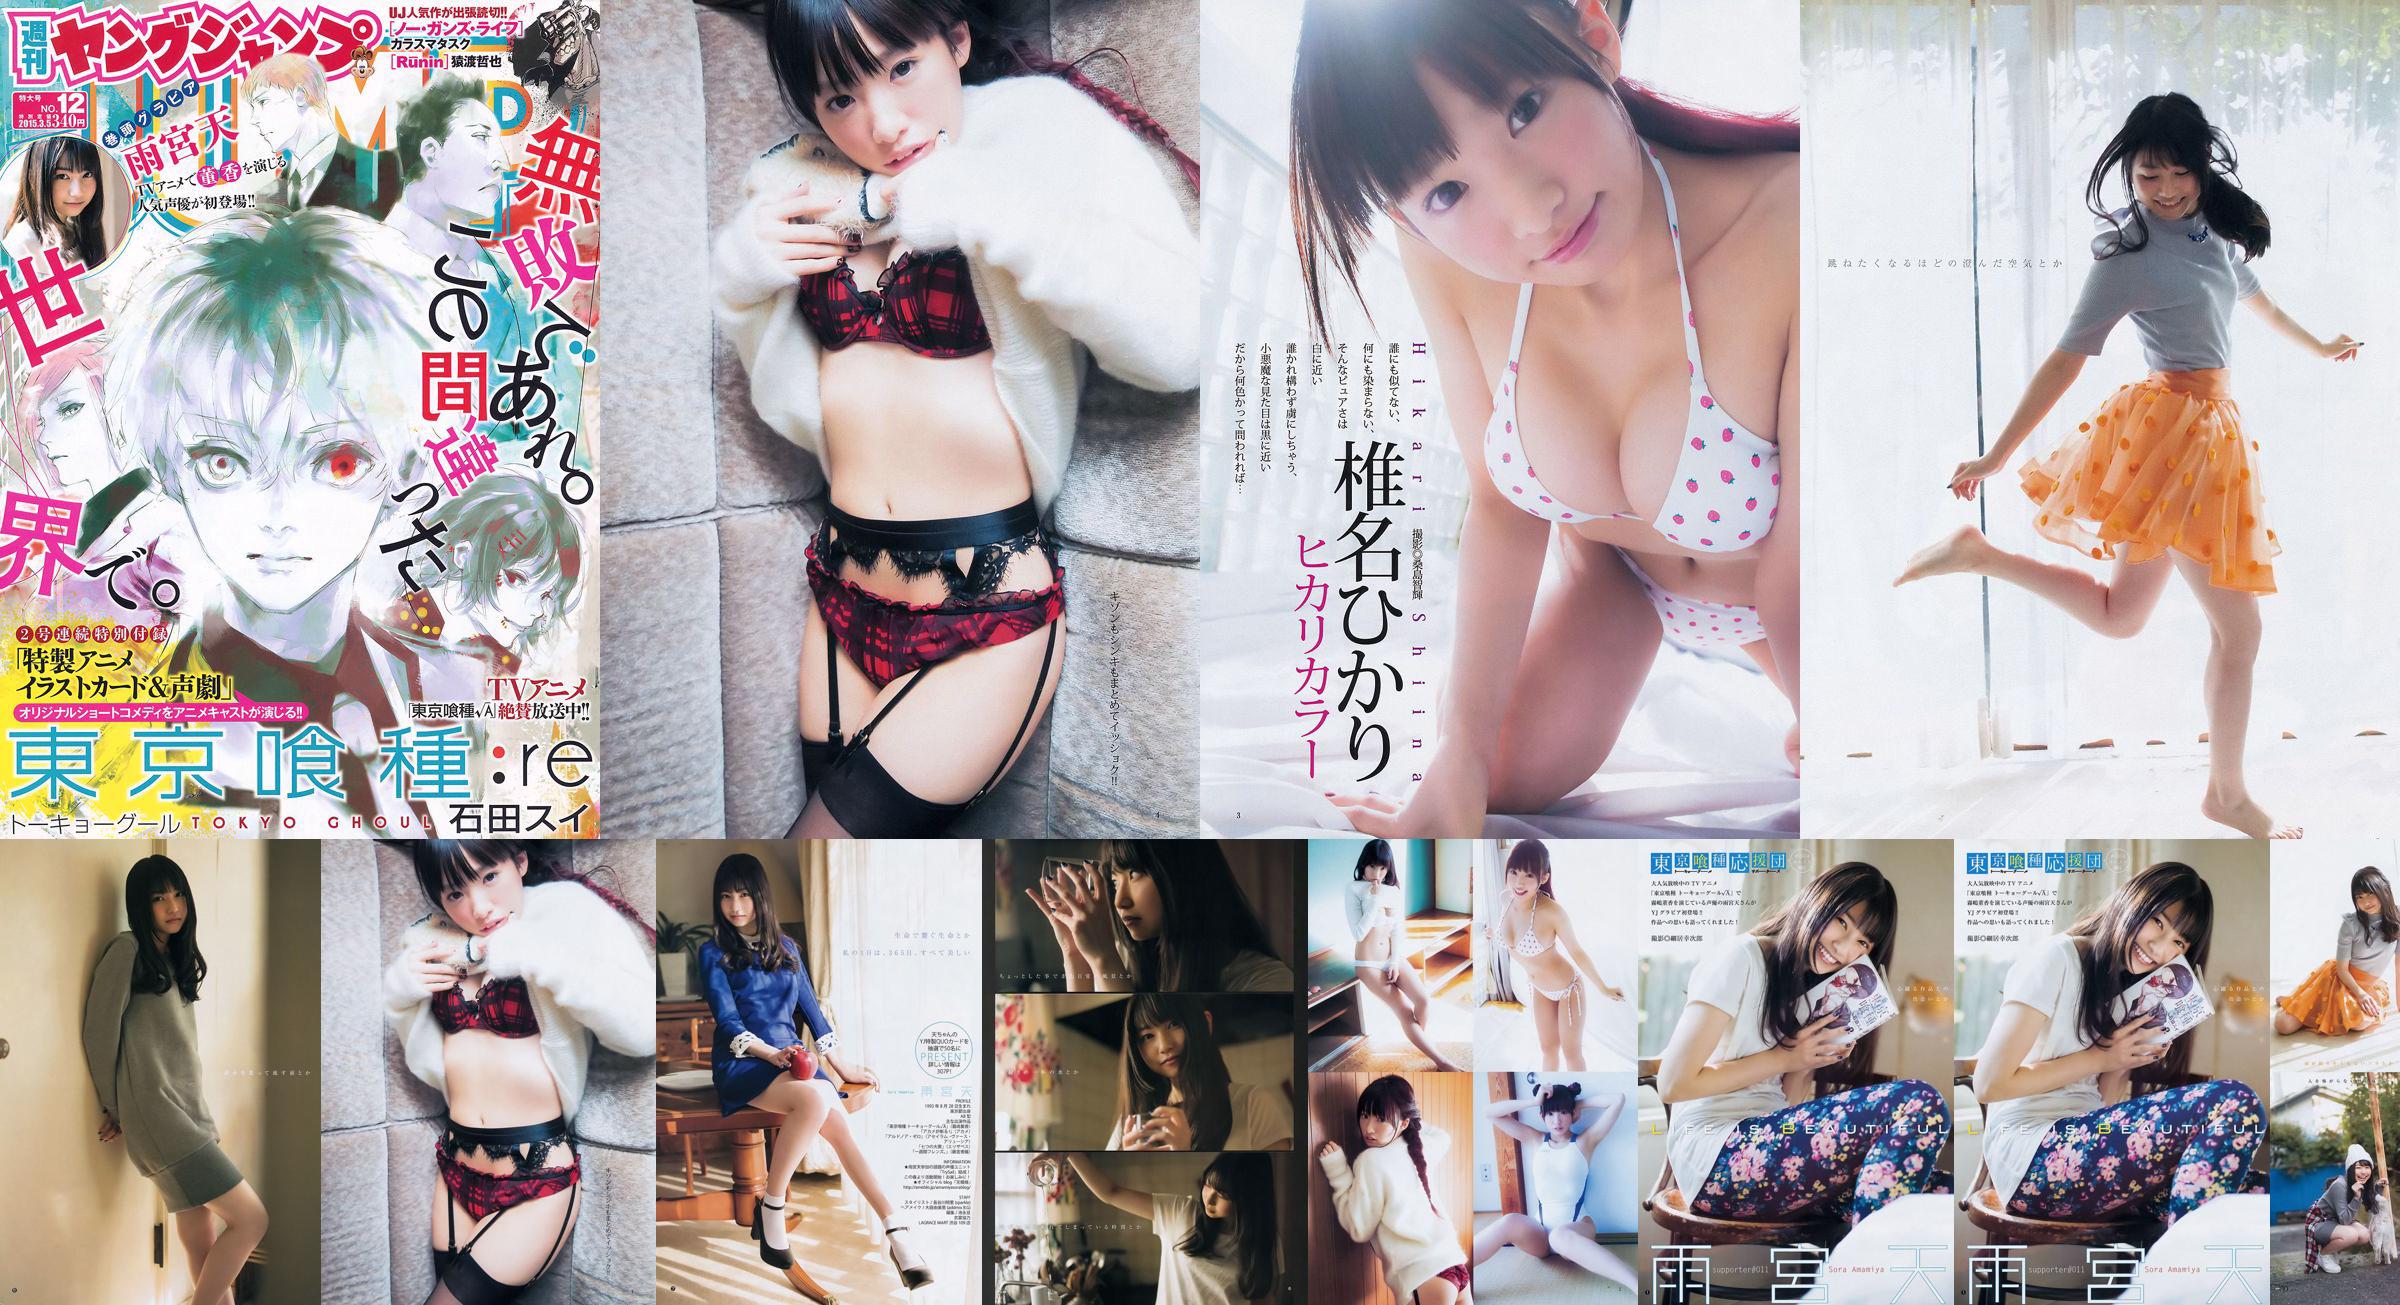 Amamiya Tian Shiina ひかり [Weekly Young Jump] 2015 No.12 Photo Magazine No.819cf8 Page 6